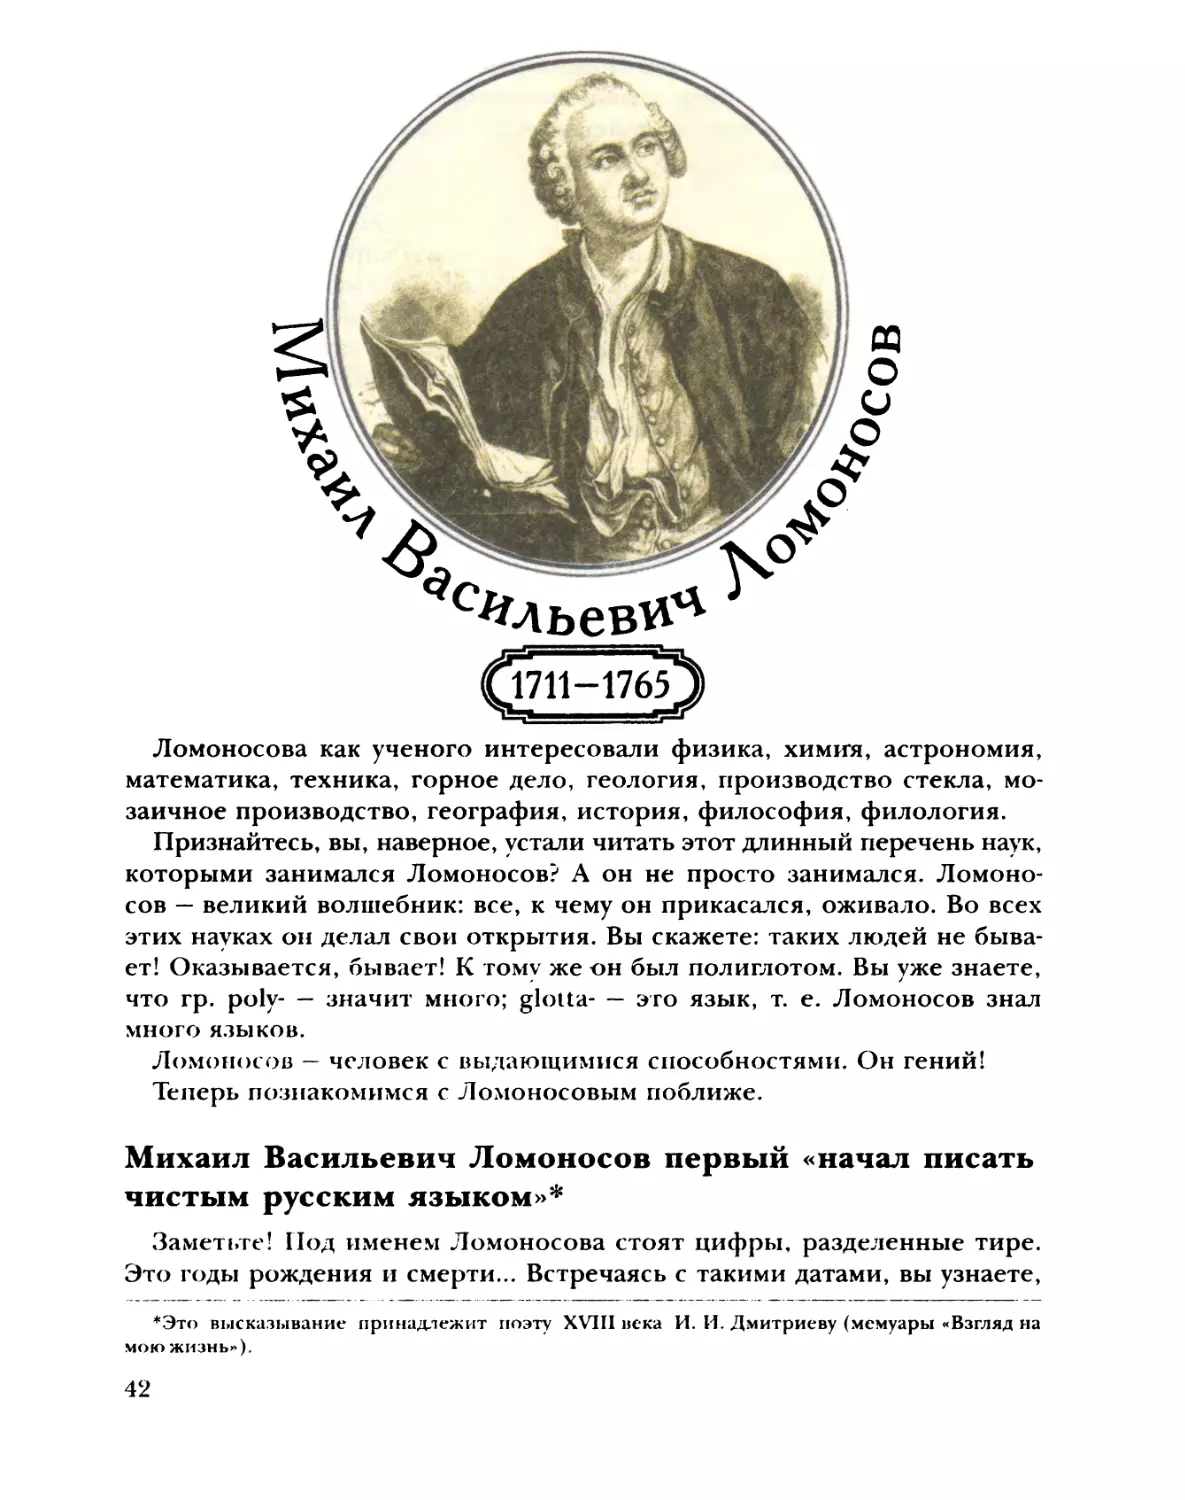 Михаил Васильевич Ломоносов первым «начал писать чистым русским языком»